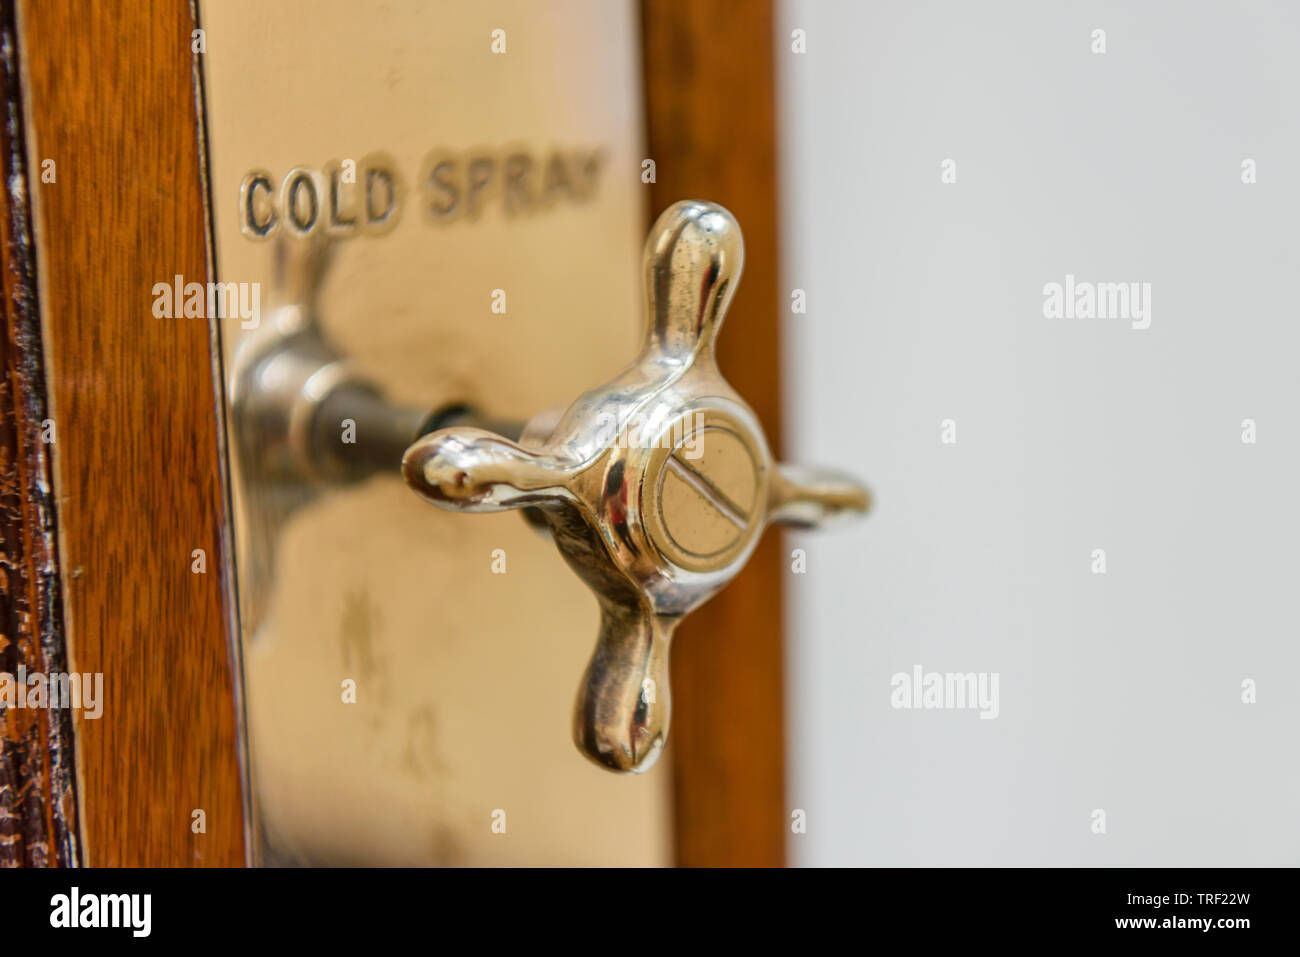 Auf eine altmodische Duschkabine mit der Bezeichnung 'cold Spray" tippen Stockfoto